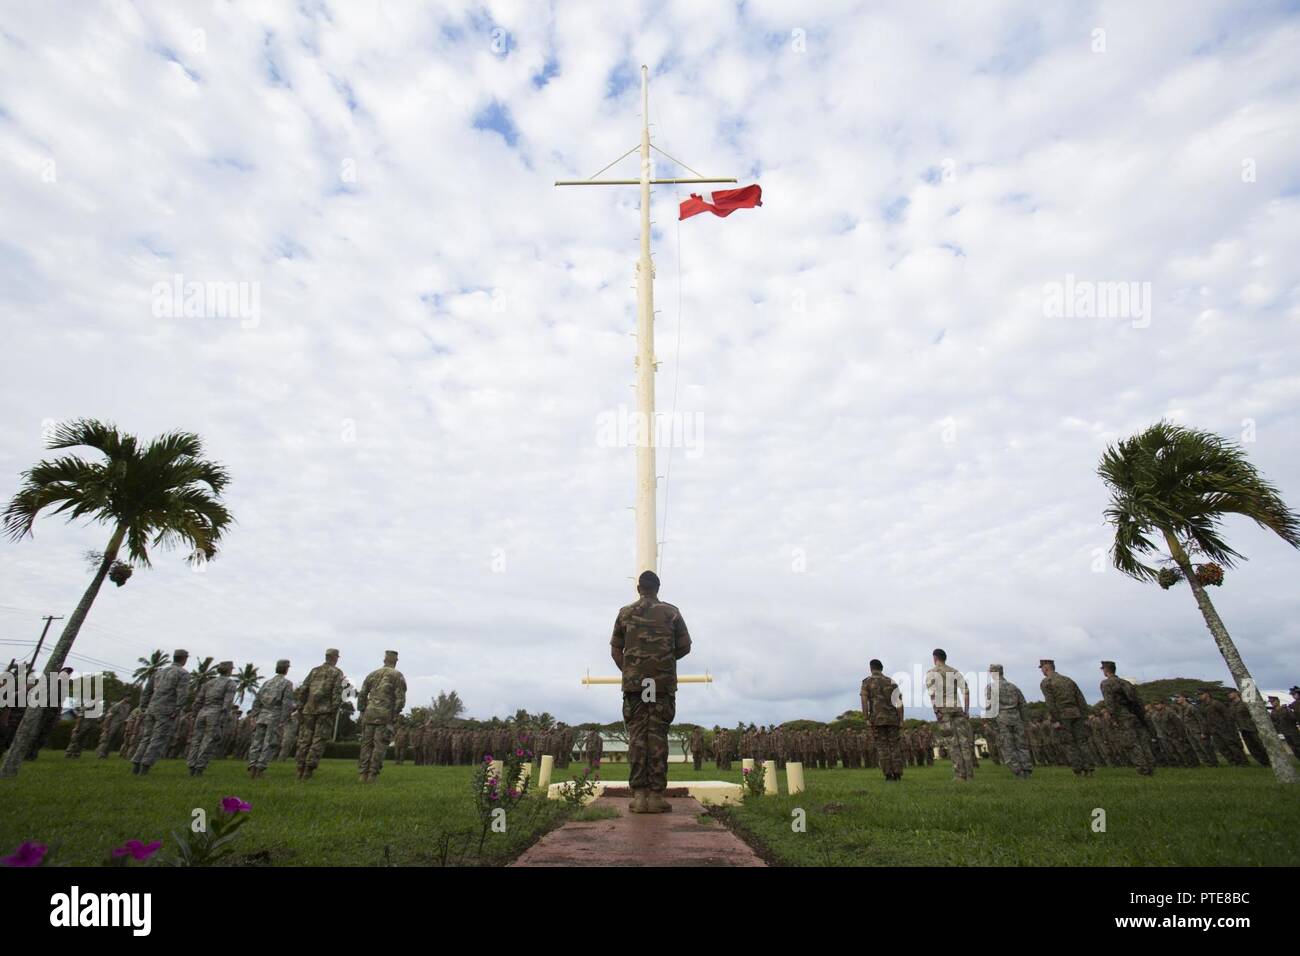 L'île de Tongatapu (Tonga) - Les Marines américains et les marins à la Task Force 17 Koa Moana, Tonga, les Forces armées de Sa Majesté, les soldats français et les membres de la Force de défense néo-zélandaise au garde à vous comme un drapeau est soulevée au cours de la cérémonie d'ouverture de l'exercice TAFAKULA 17 juillet sur l'île de Tongatapu (Tonga). Cette cérémonie marque le début de deux semaines de formation d'infanterie et de l'application de la loi entre les forces armées. Banque D'Images